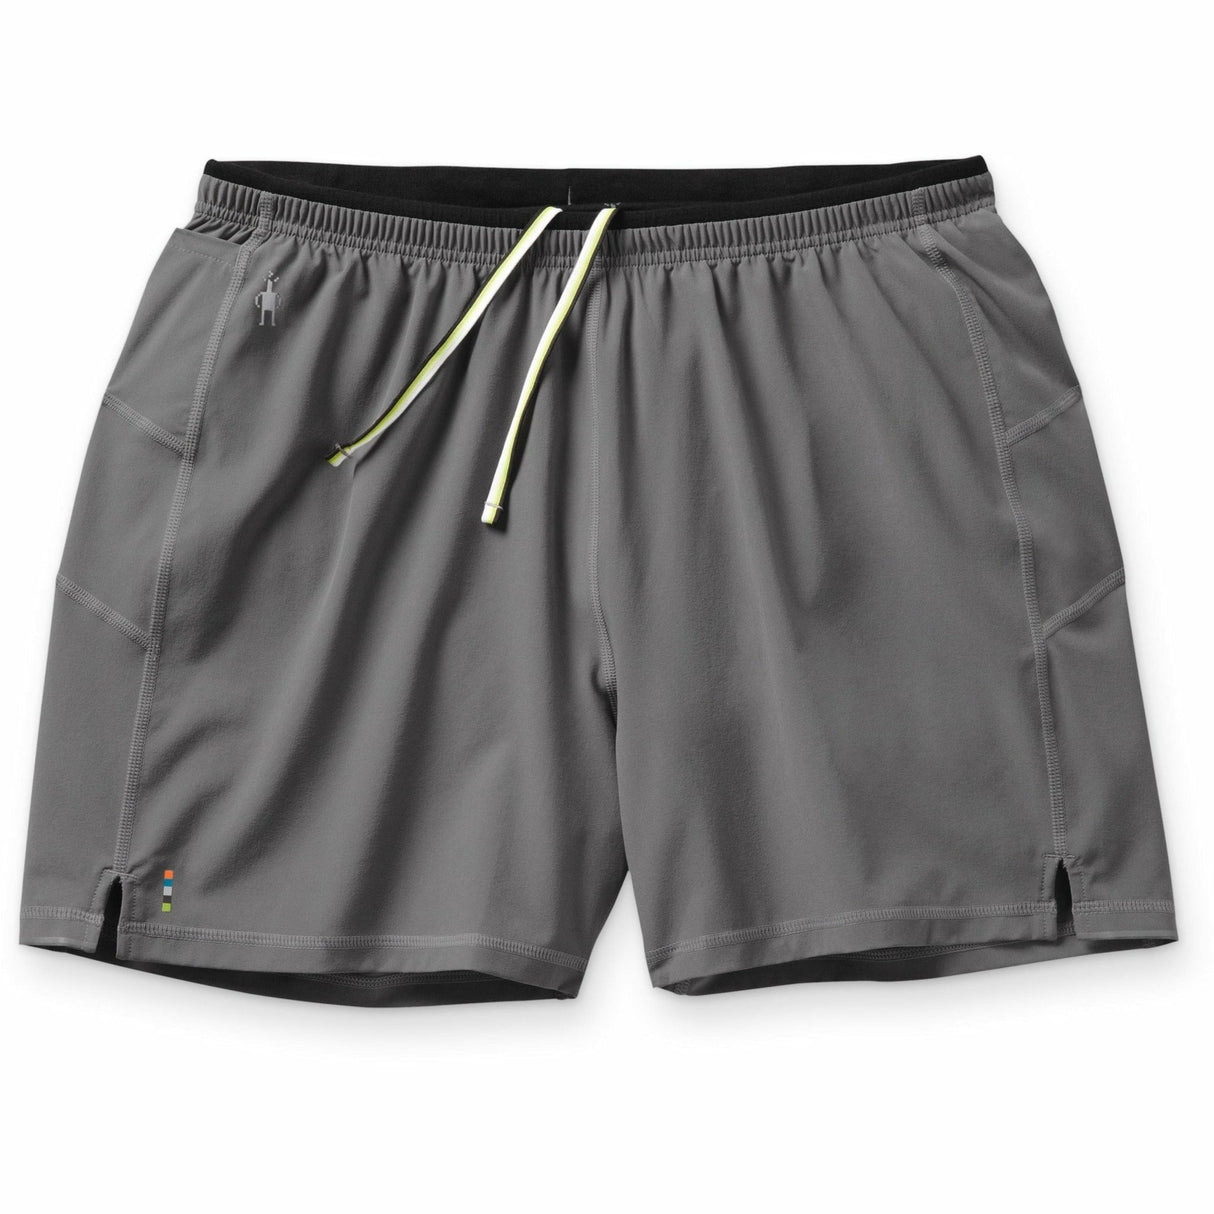 Smartwool Mens Merino Sport Lined 5" Shorts  -  Large / Medium Gray